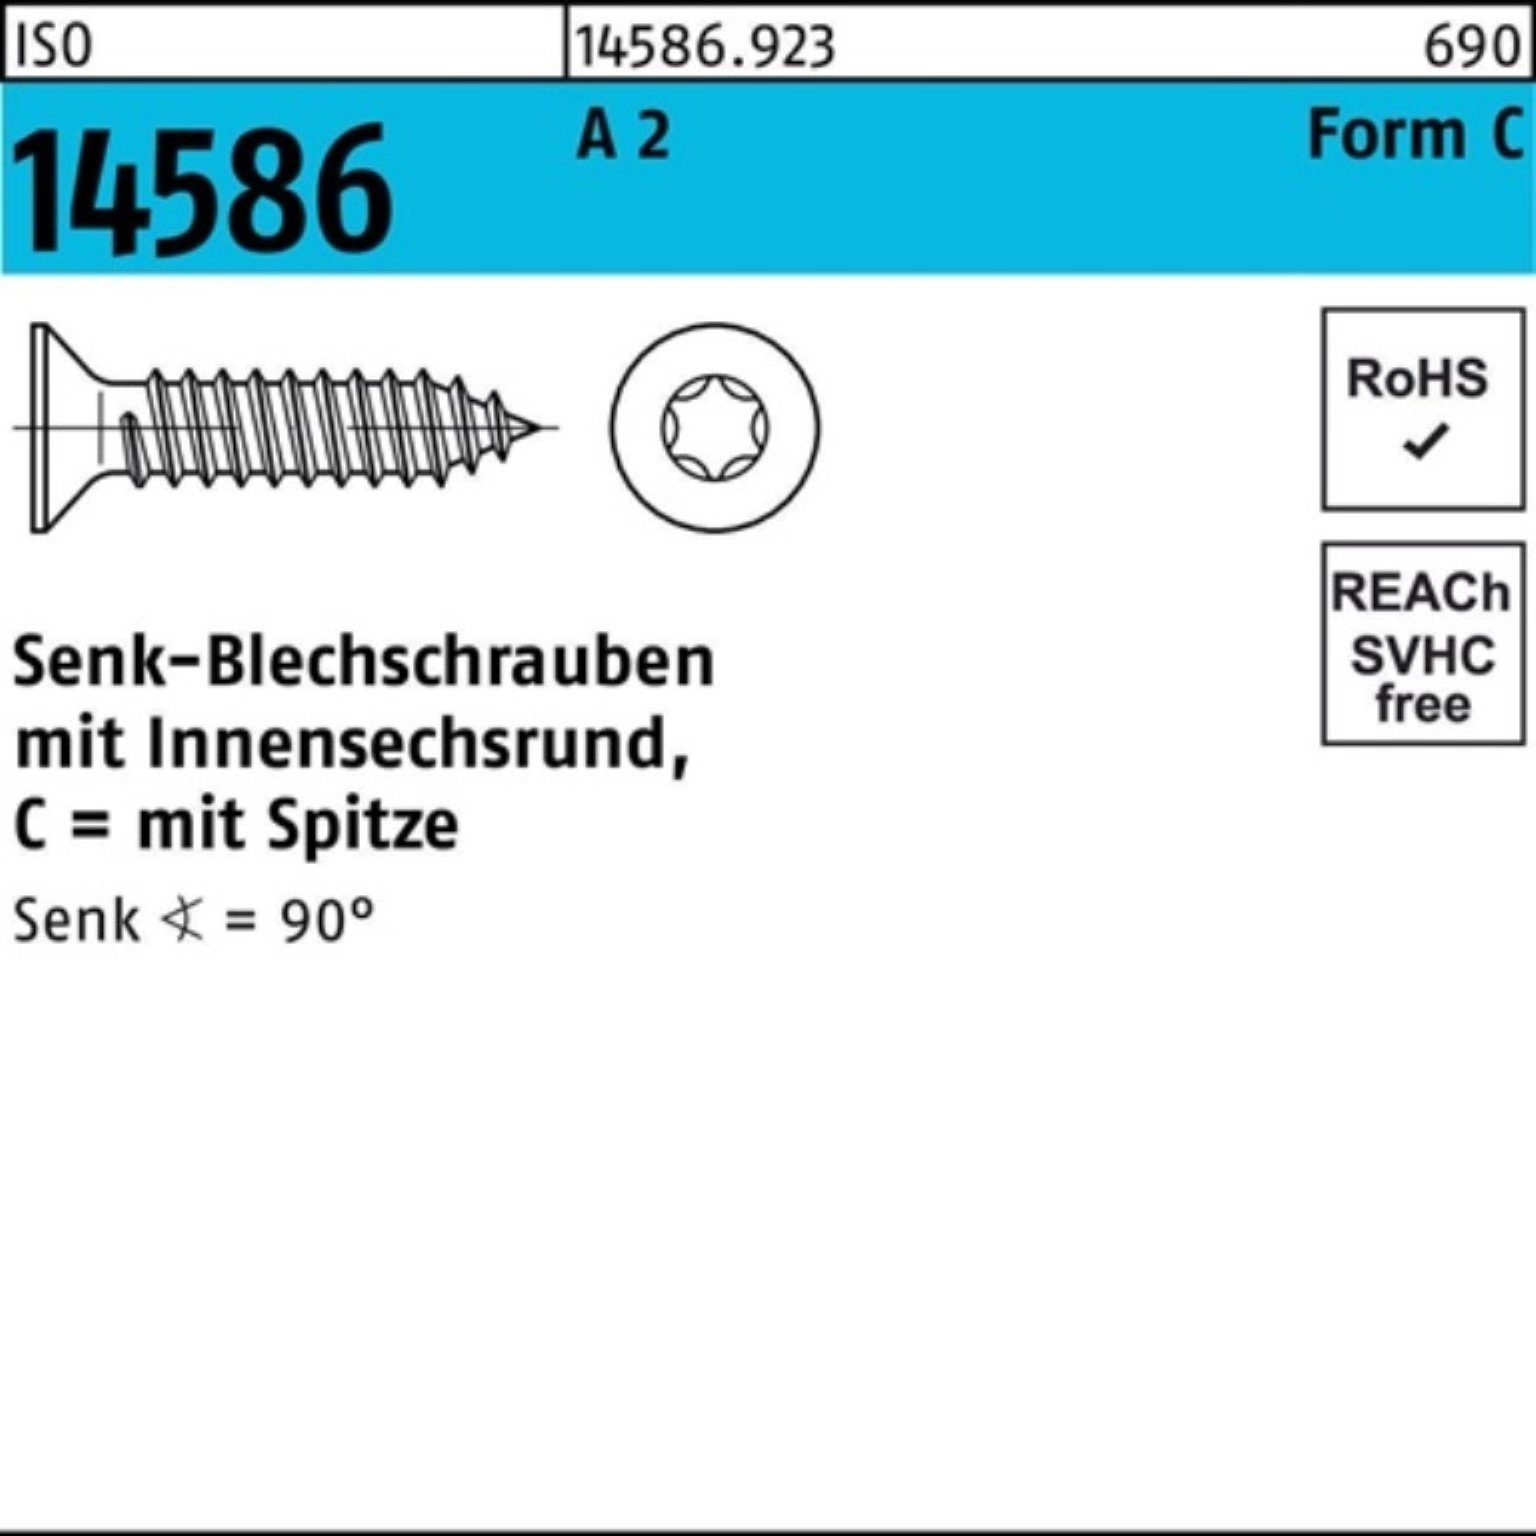 5 ISO 14586 19 A Schraube 2 -C ISR/Spitze T25 Pack 5,5x Reyher 500er Senkblechschraube